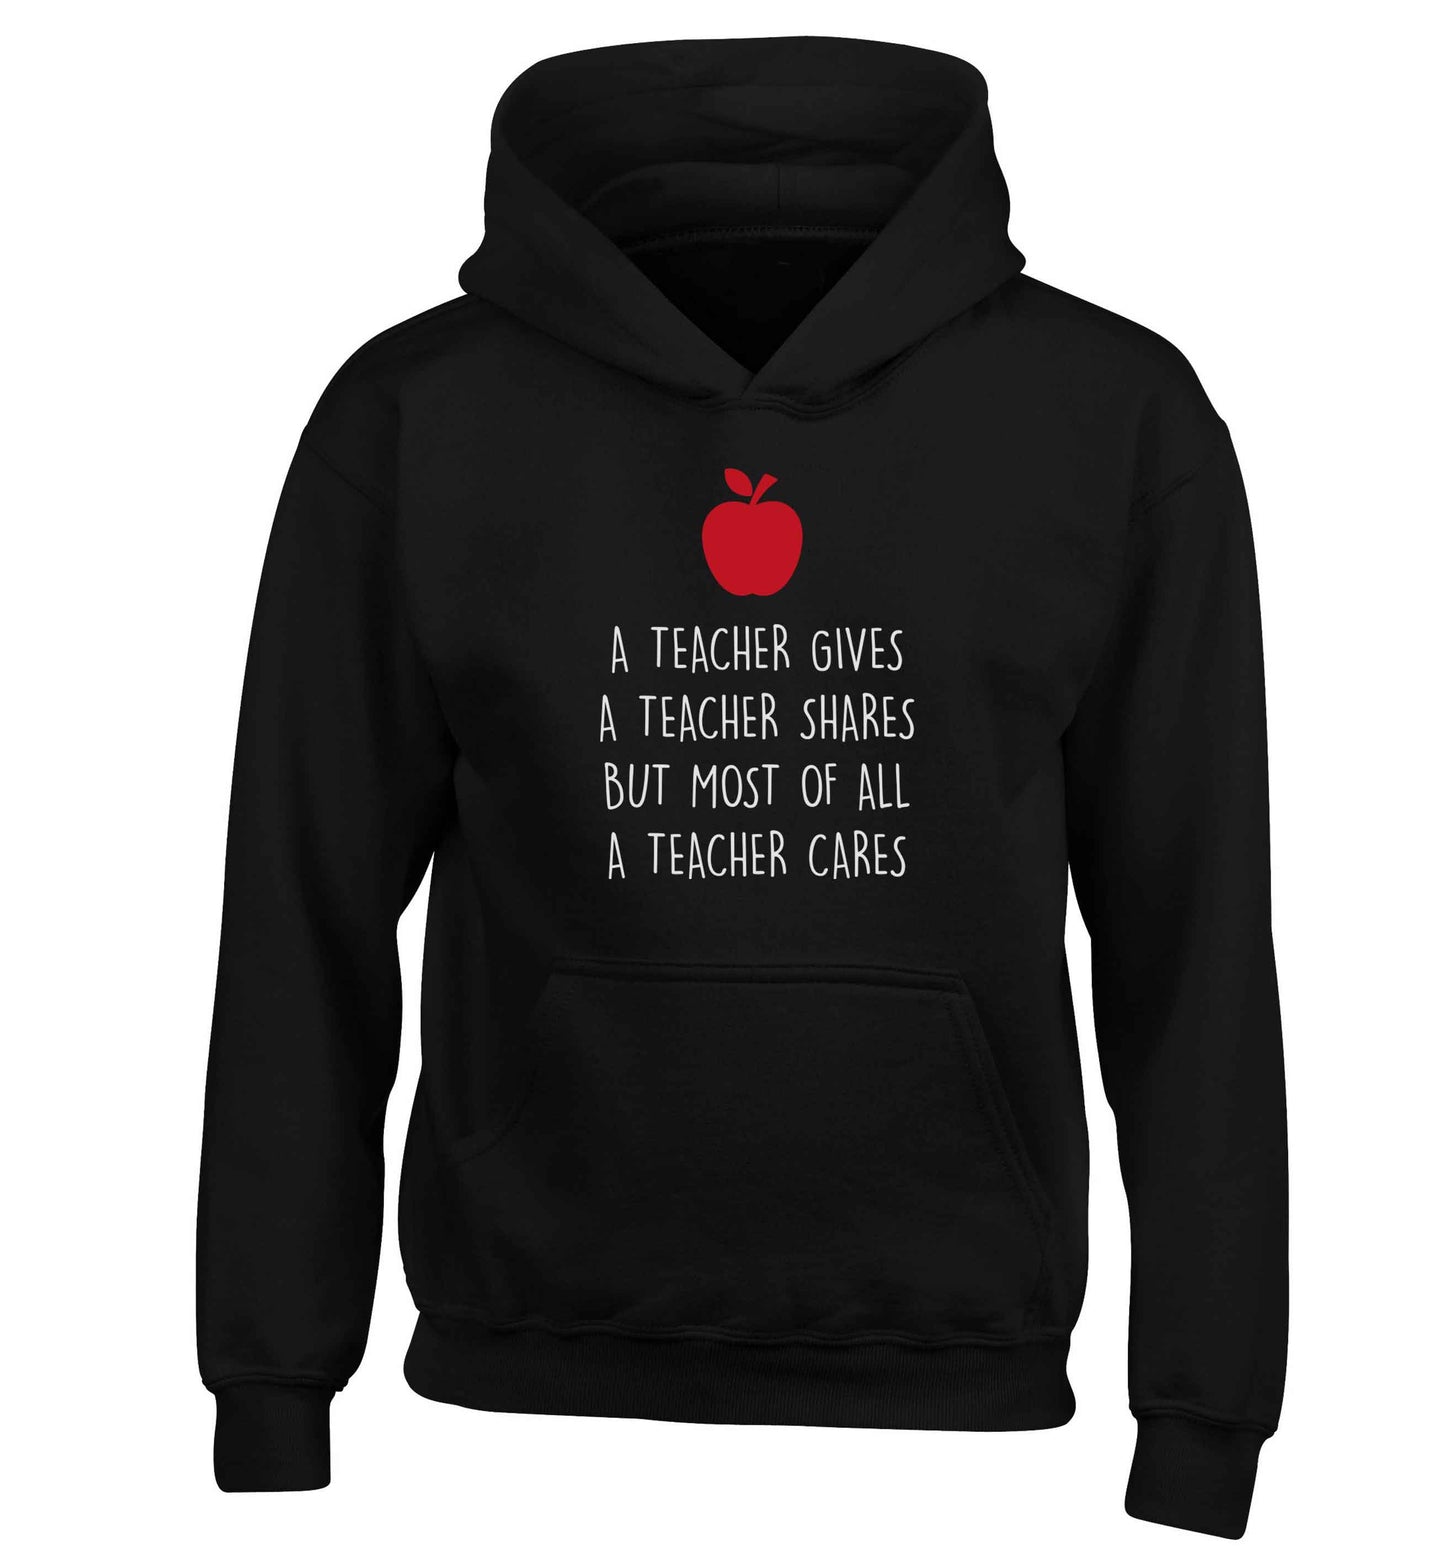 A teacher gives a teacher shares but most of all a teacher cares children's black hoodie 12-13 Years